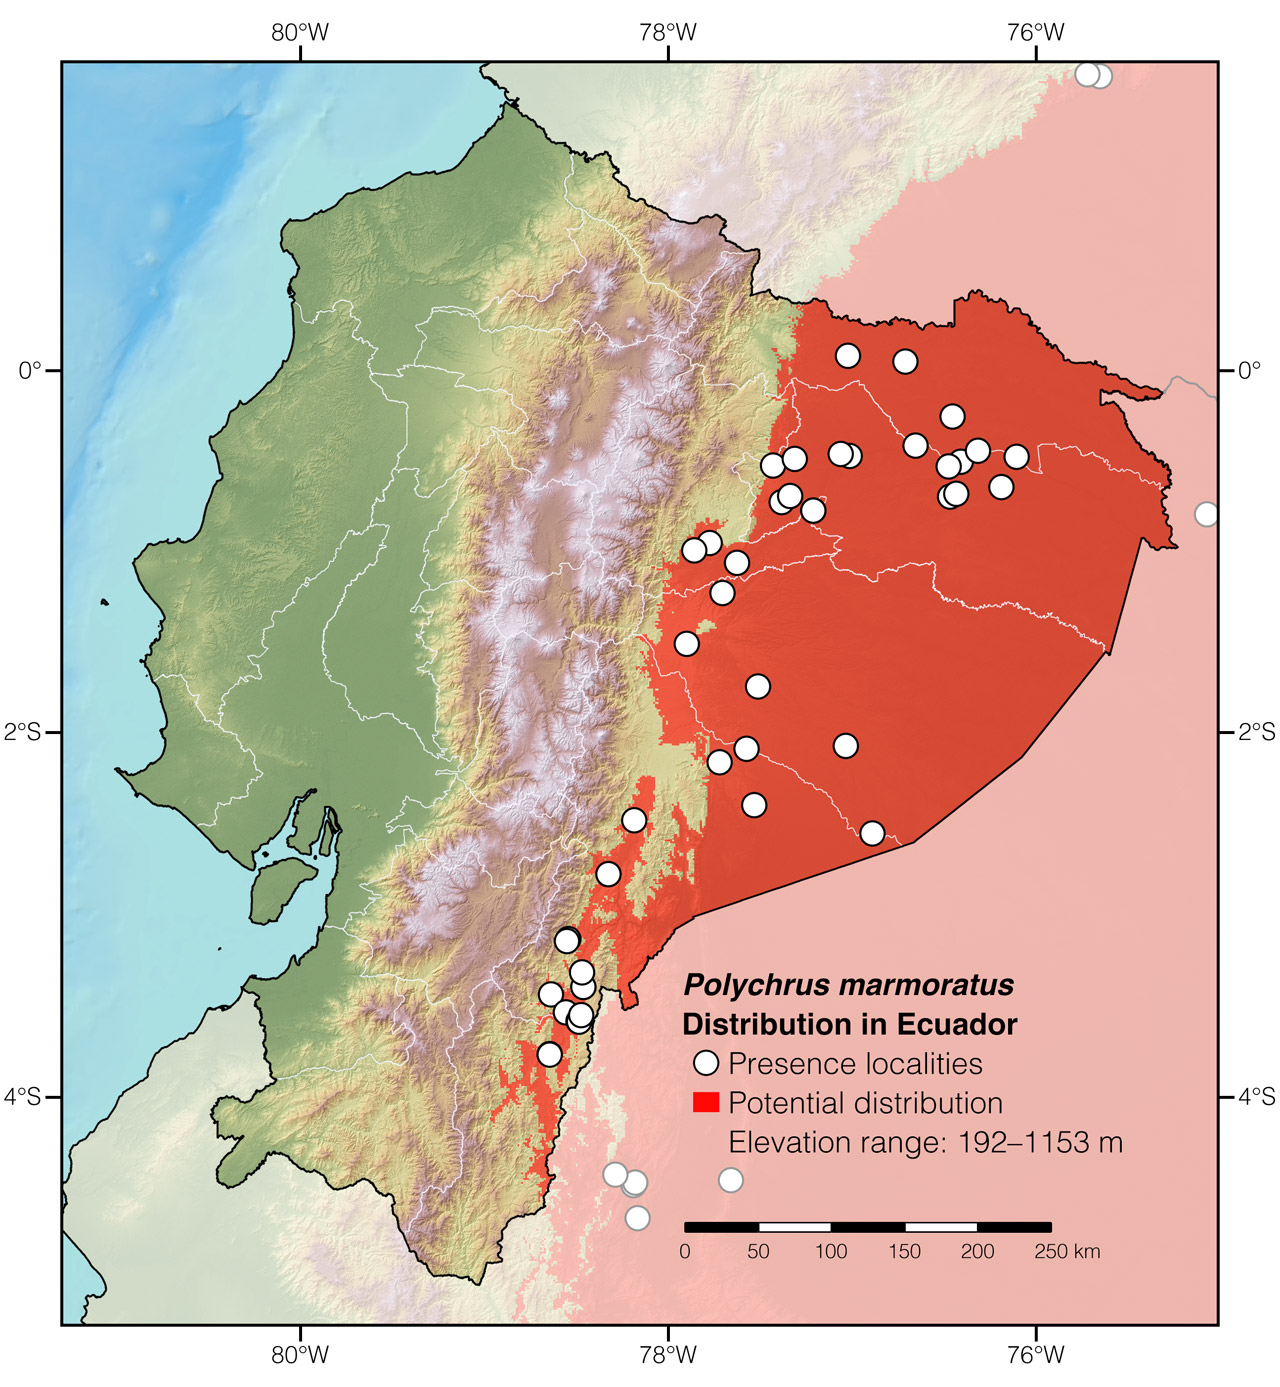 Distribution of Polychrus marmoratus in Ecuador